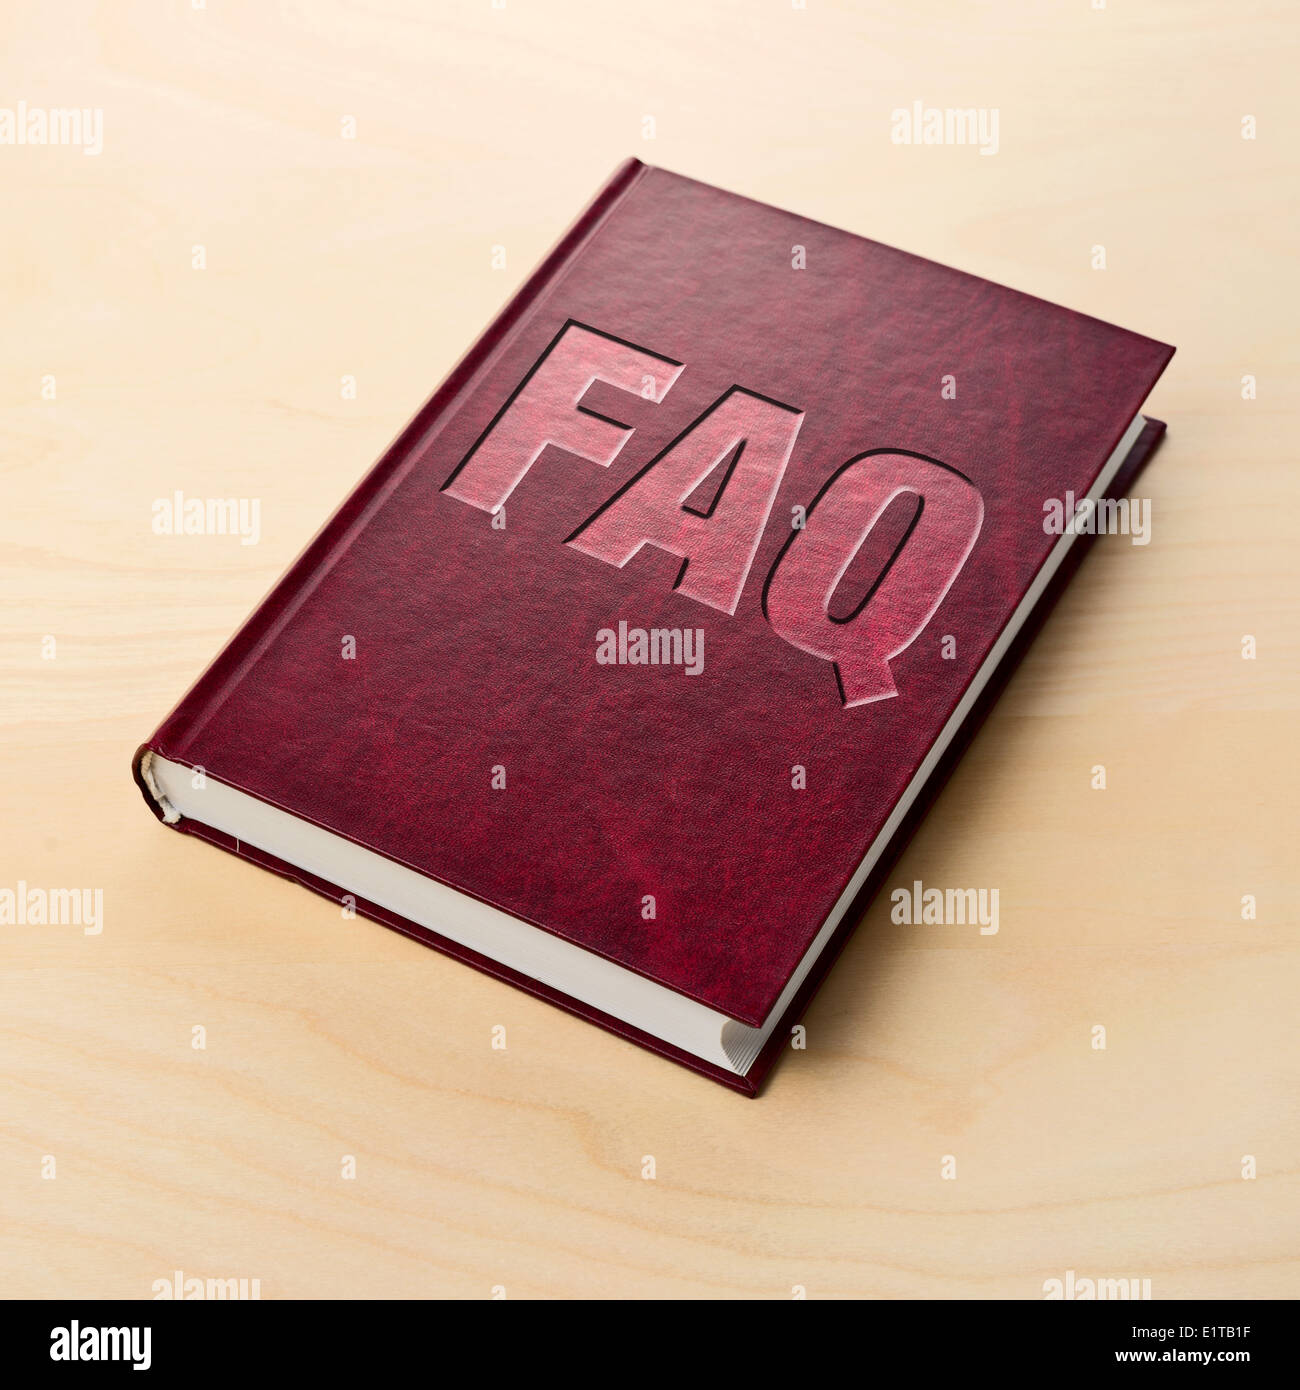 FAQ-Buch. Häufig gestellte Fragen oder Führer auf der Tabelle gedruckt. Stockfoto